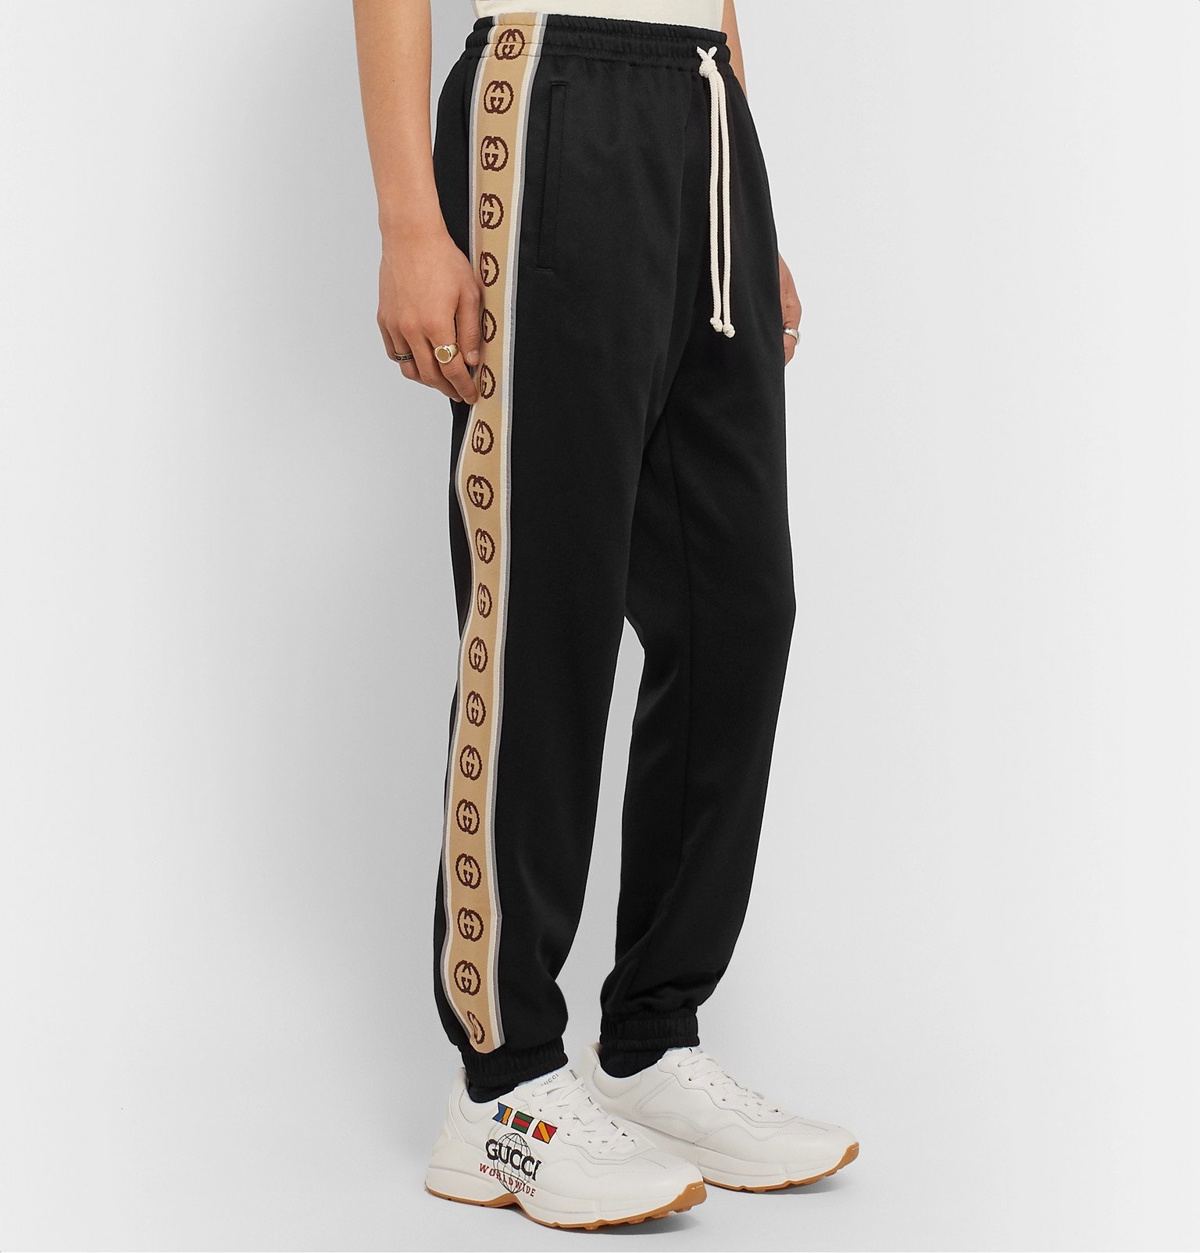 Gucci x Adidas Jersey Pant